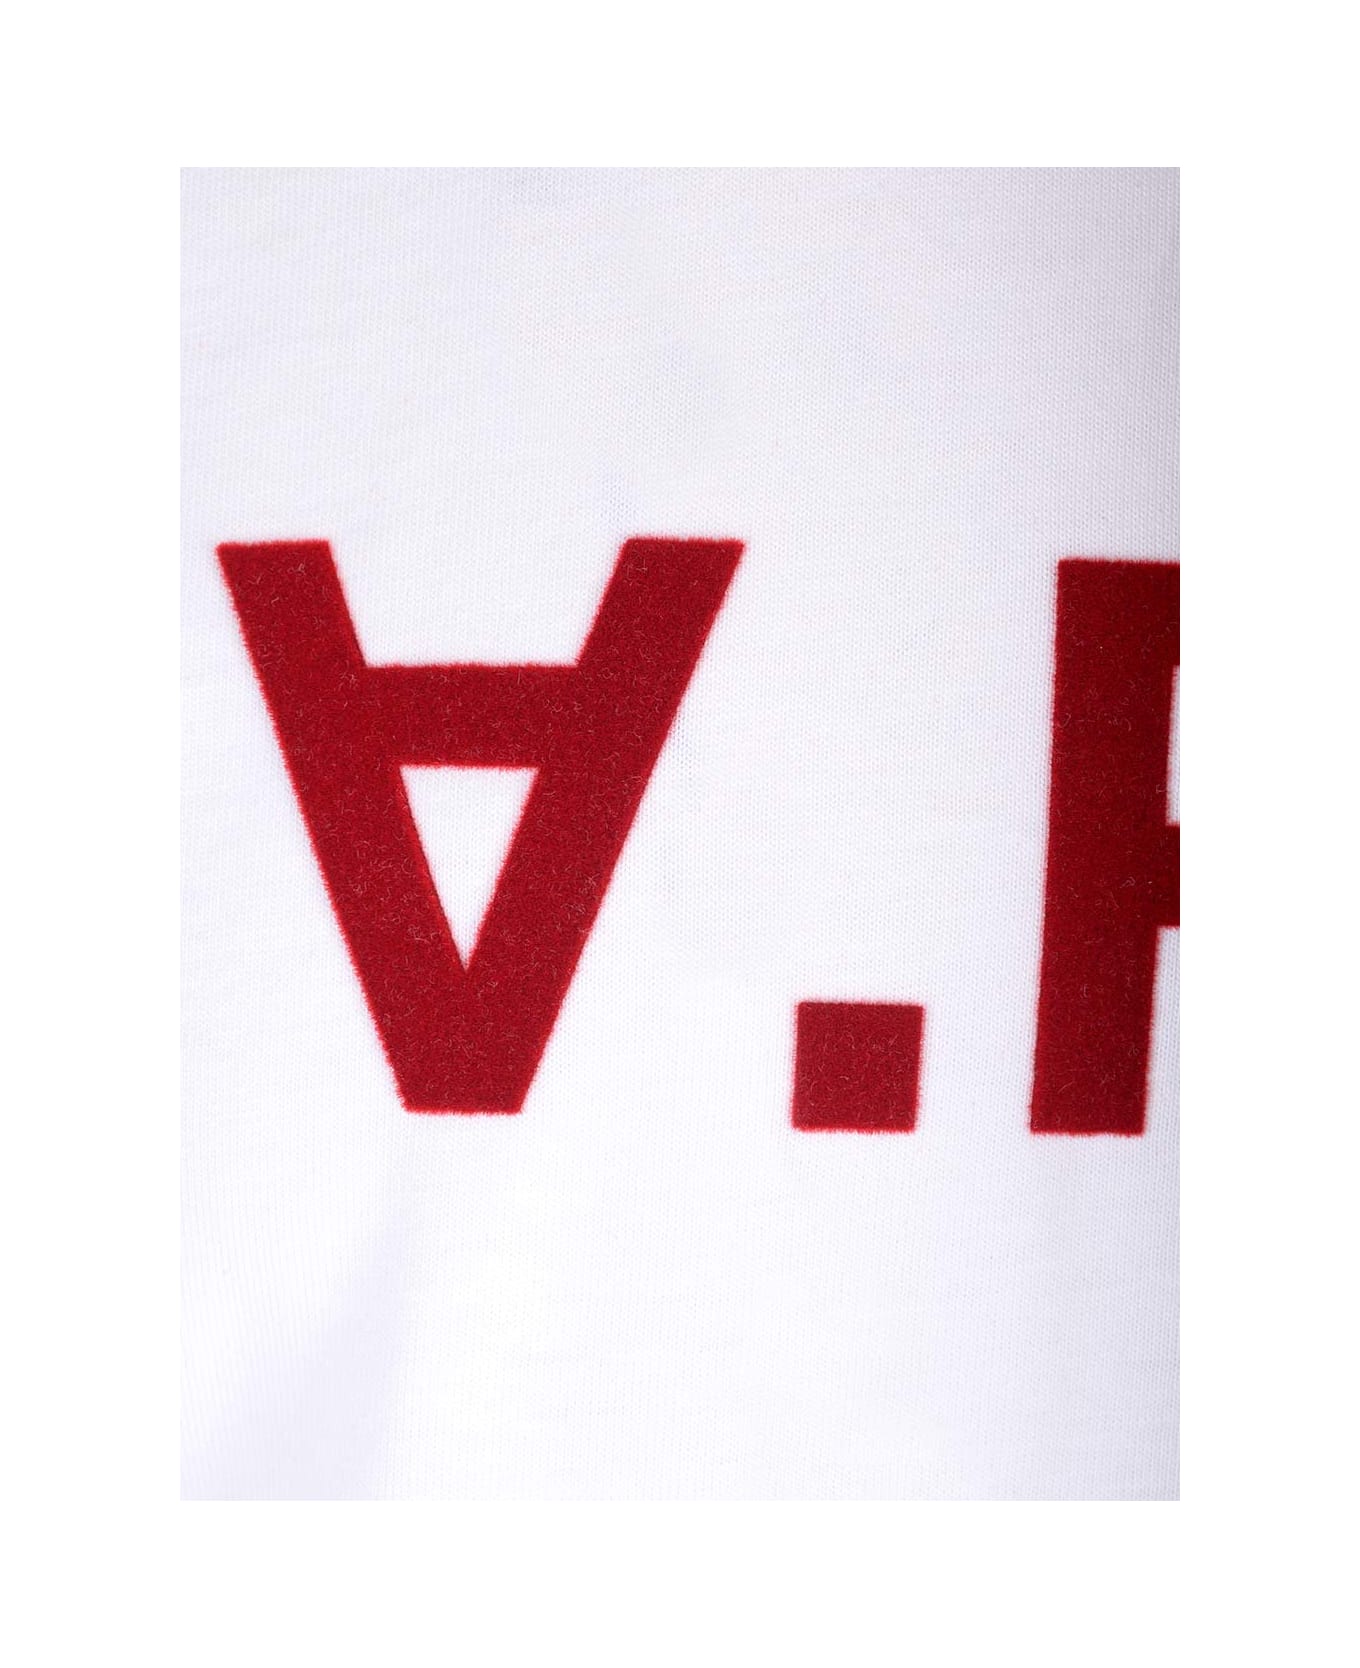 A.P.C. Vpc T-shirt - Tab Blanc Rouge